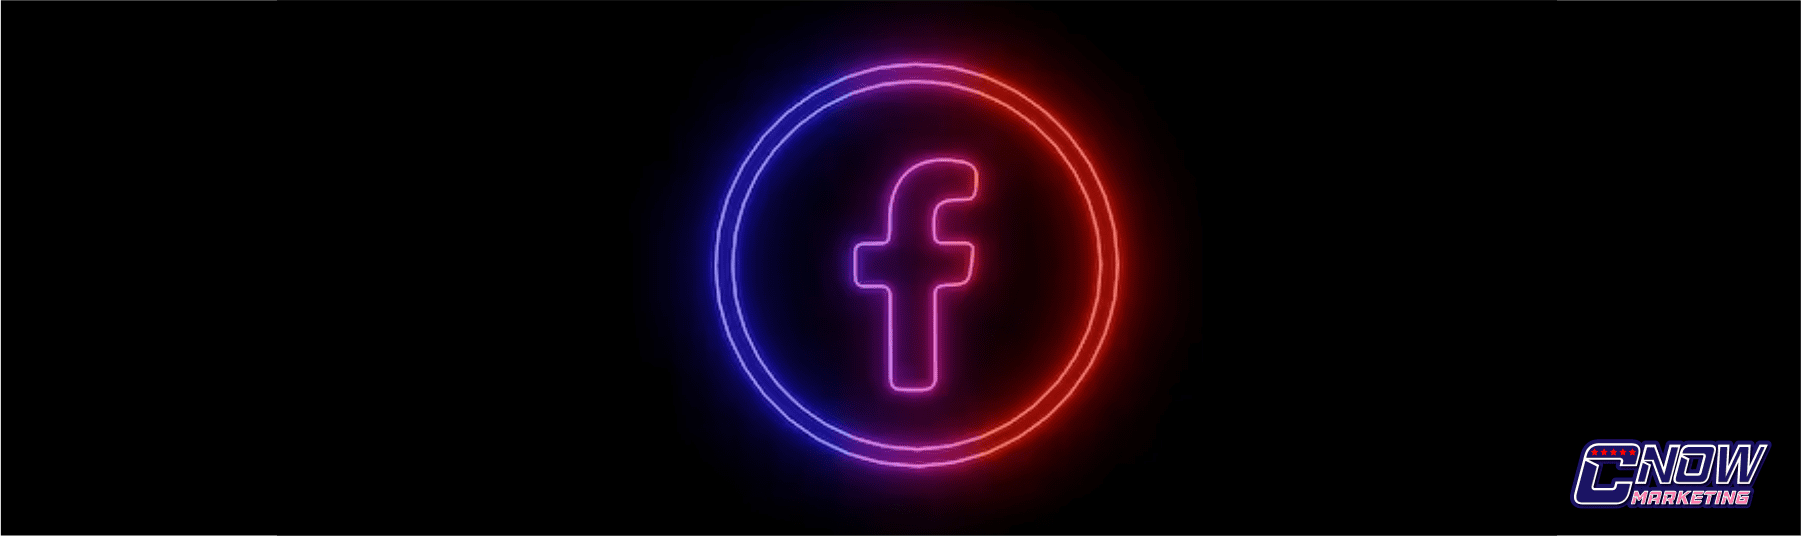 Rede Social Facebook